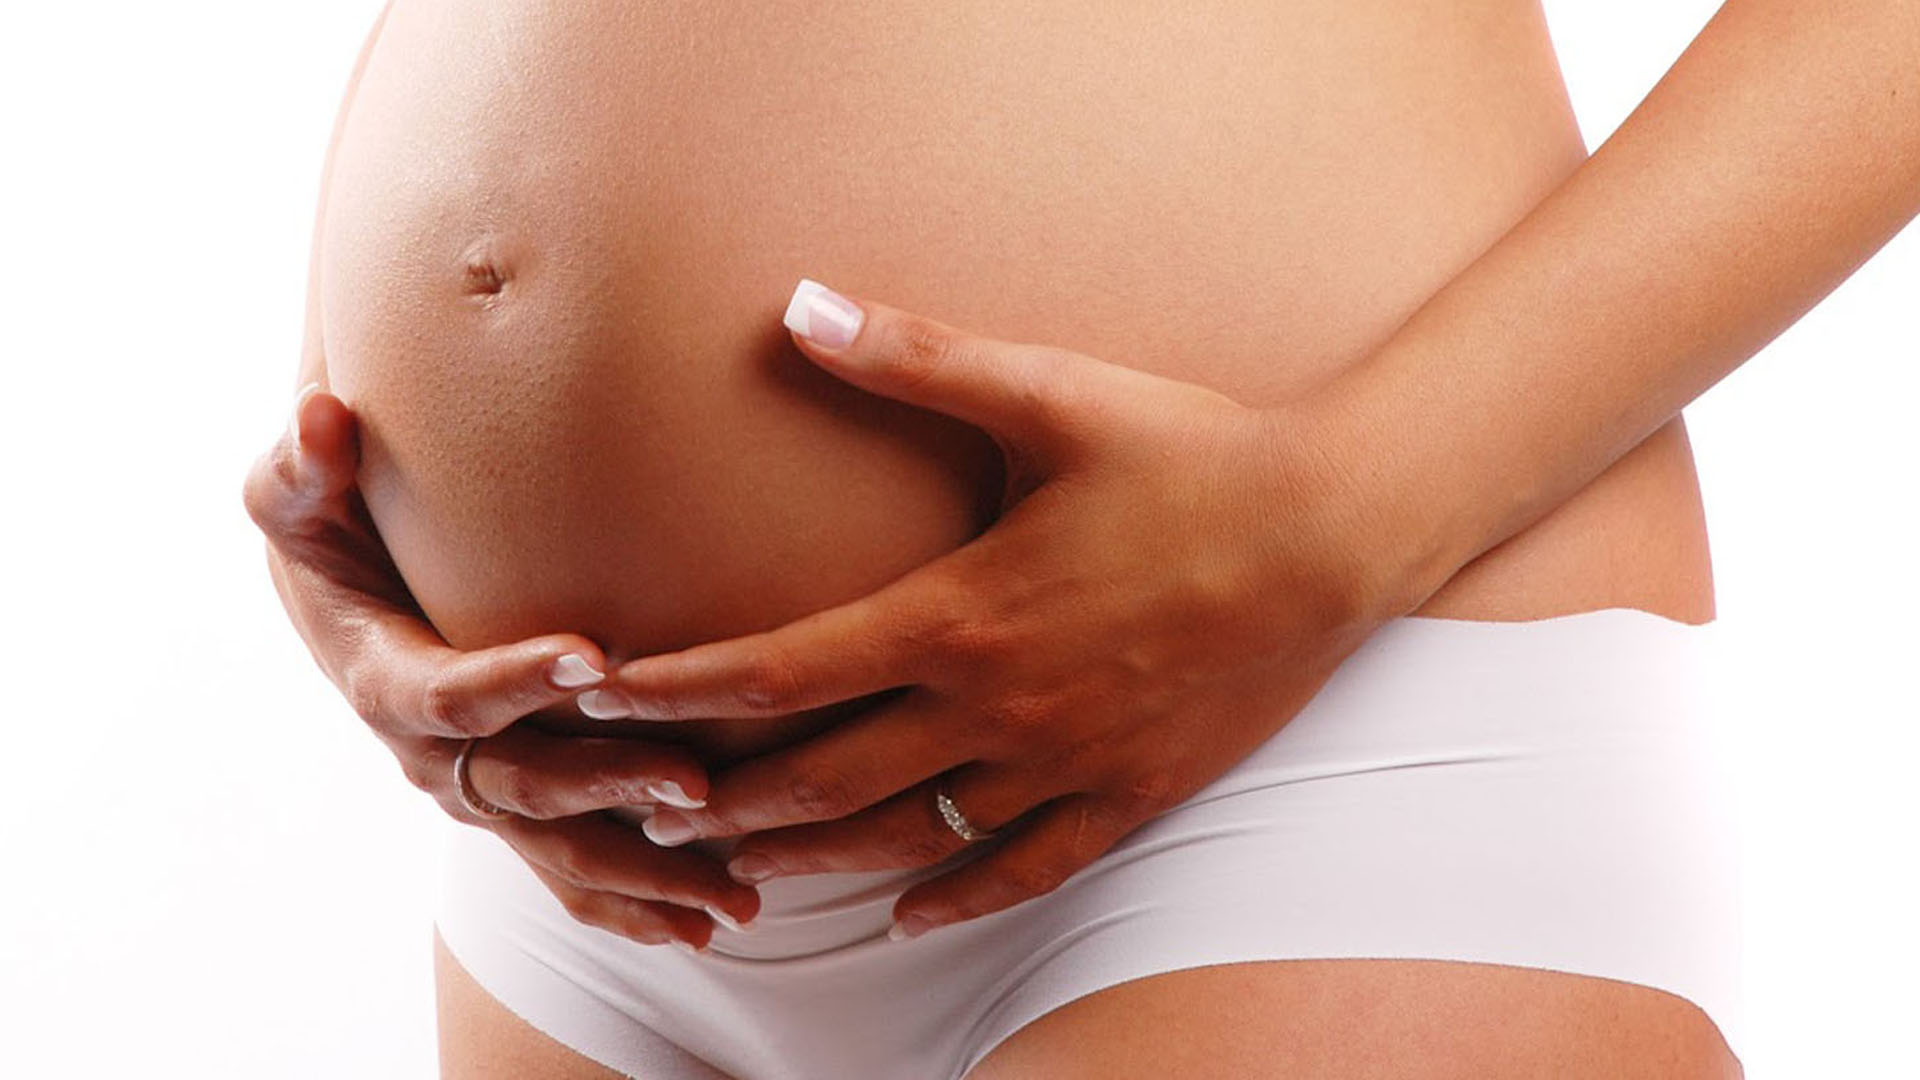 Estudio reveló que el examen visual podría estar relacionado con riesgo de parto prematuro